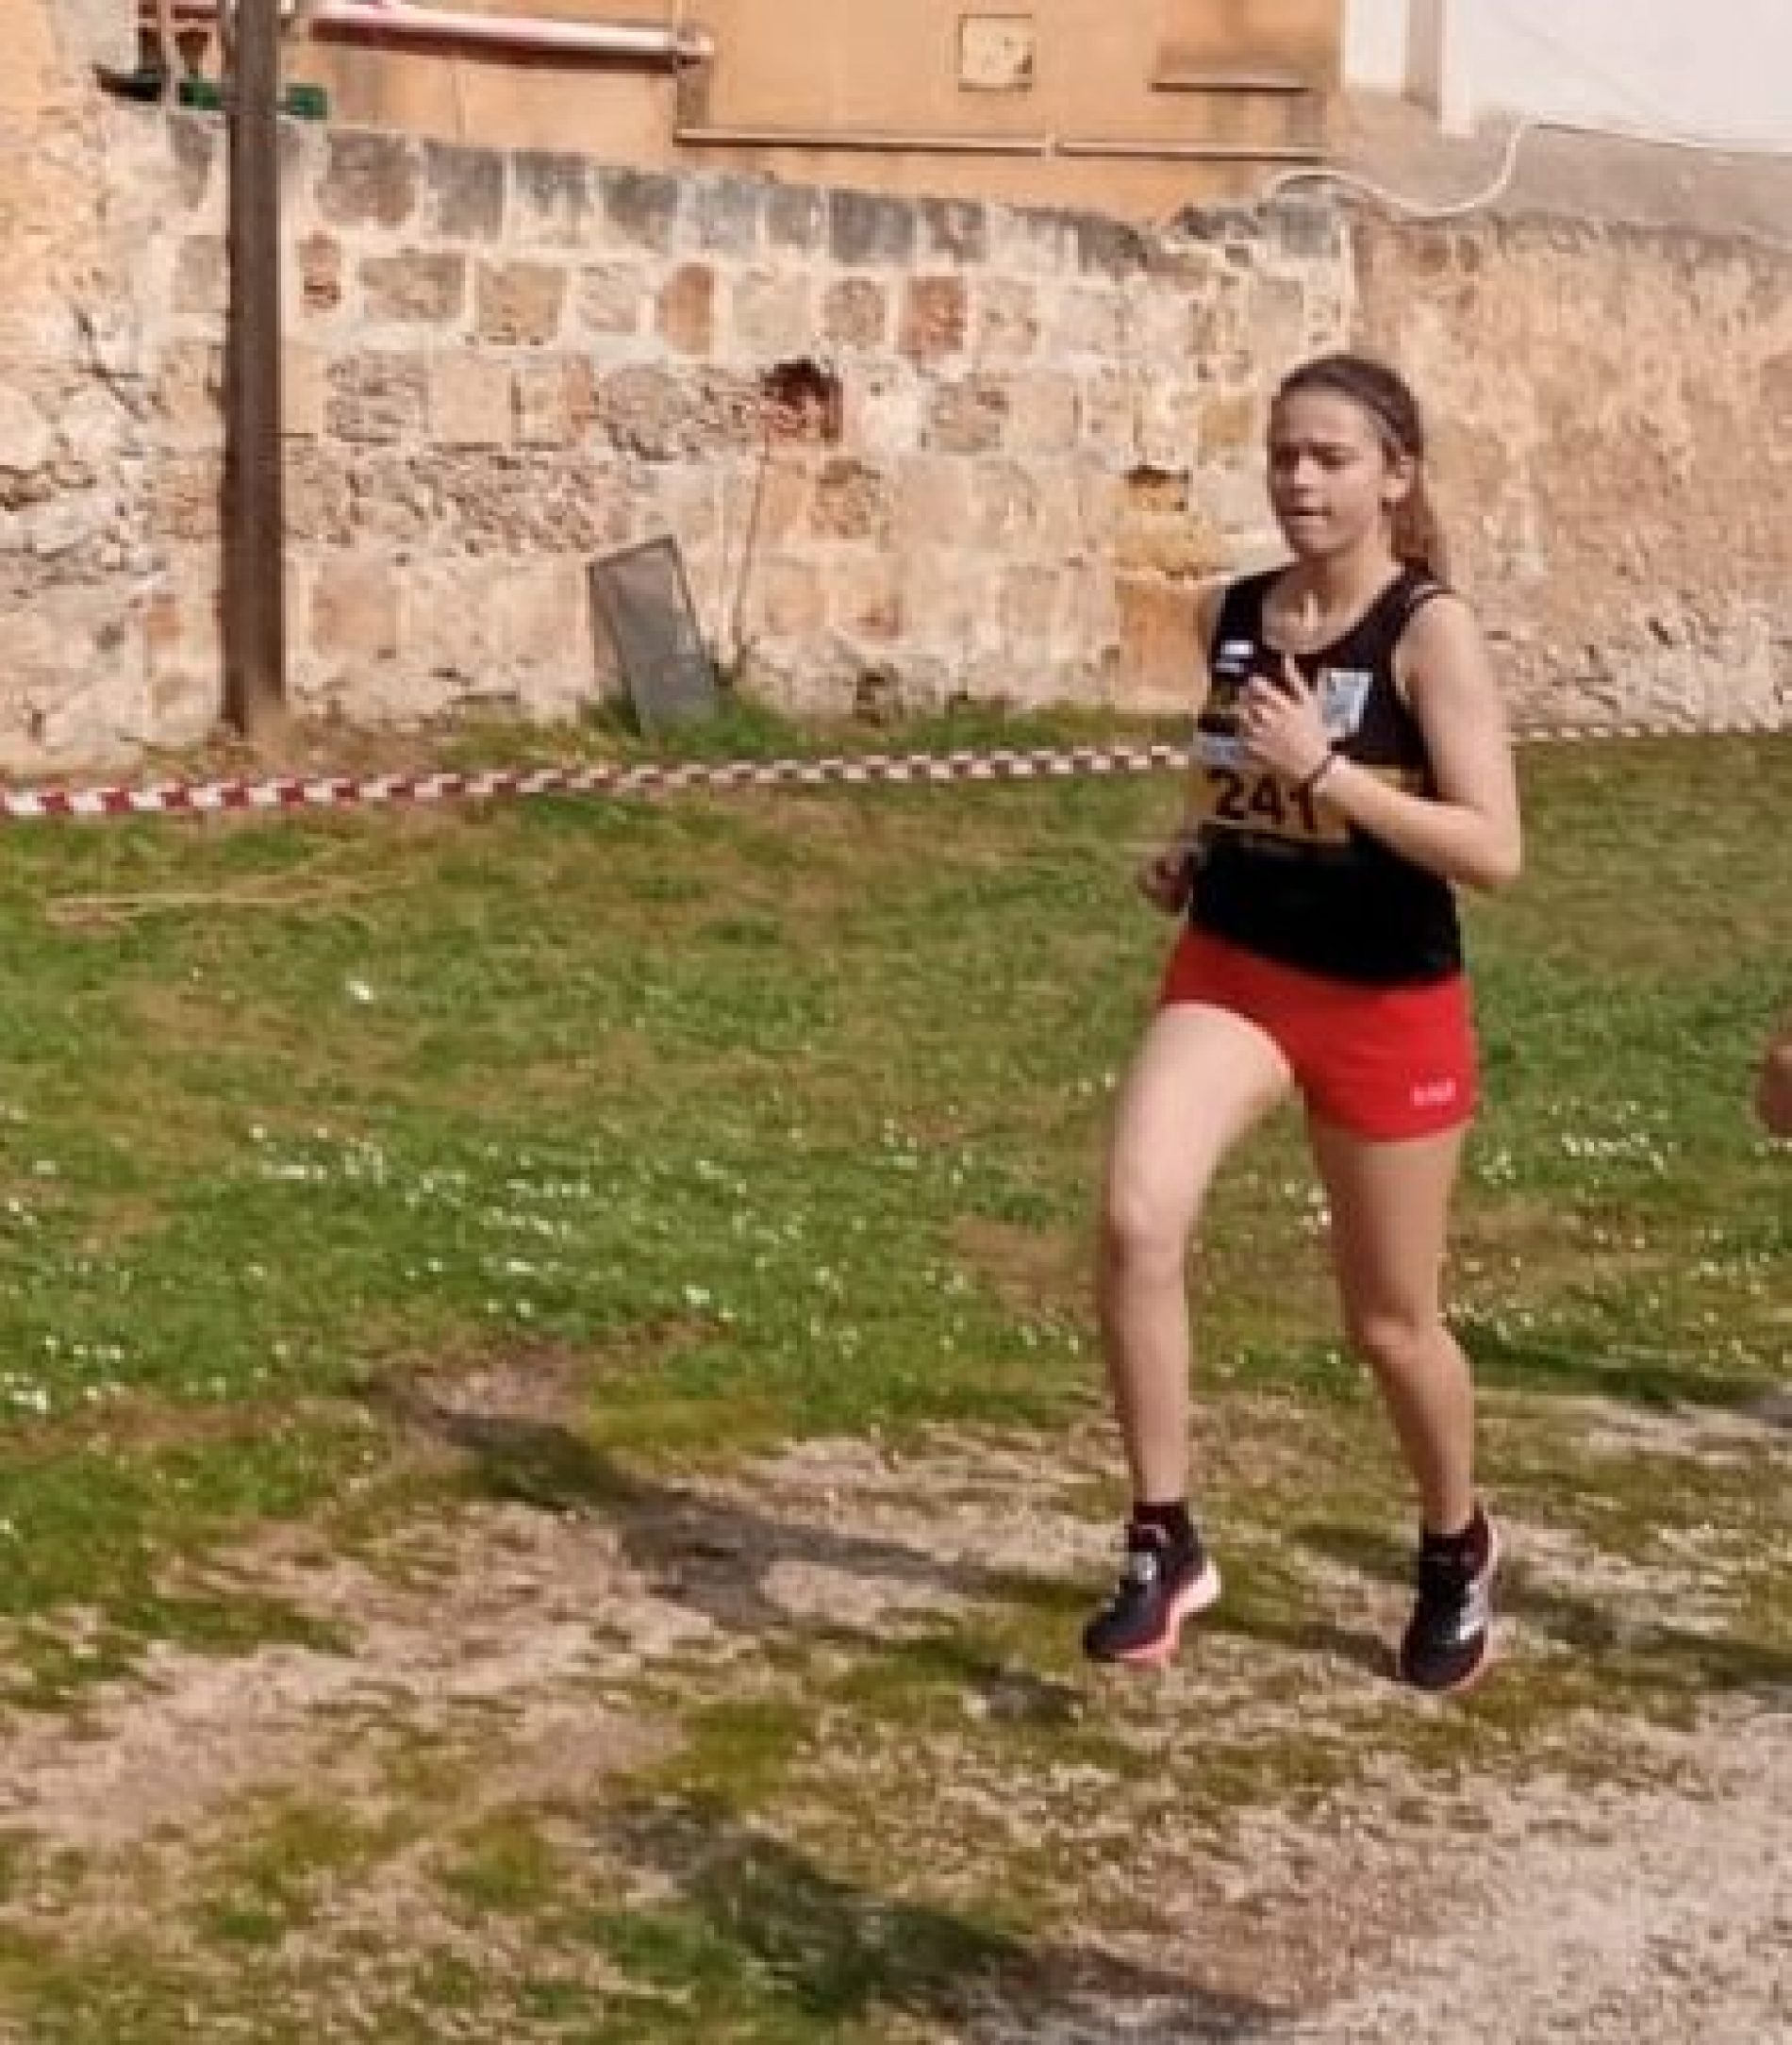 BARRAFRANCA. La giovane promessa dell’atletica Lorenza Blandi conferma le sue capacità ed incanta a Palermo.